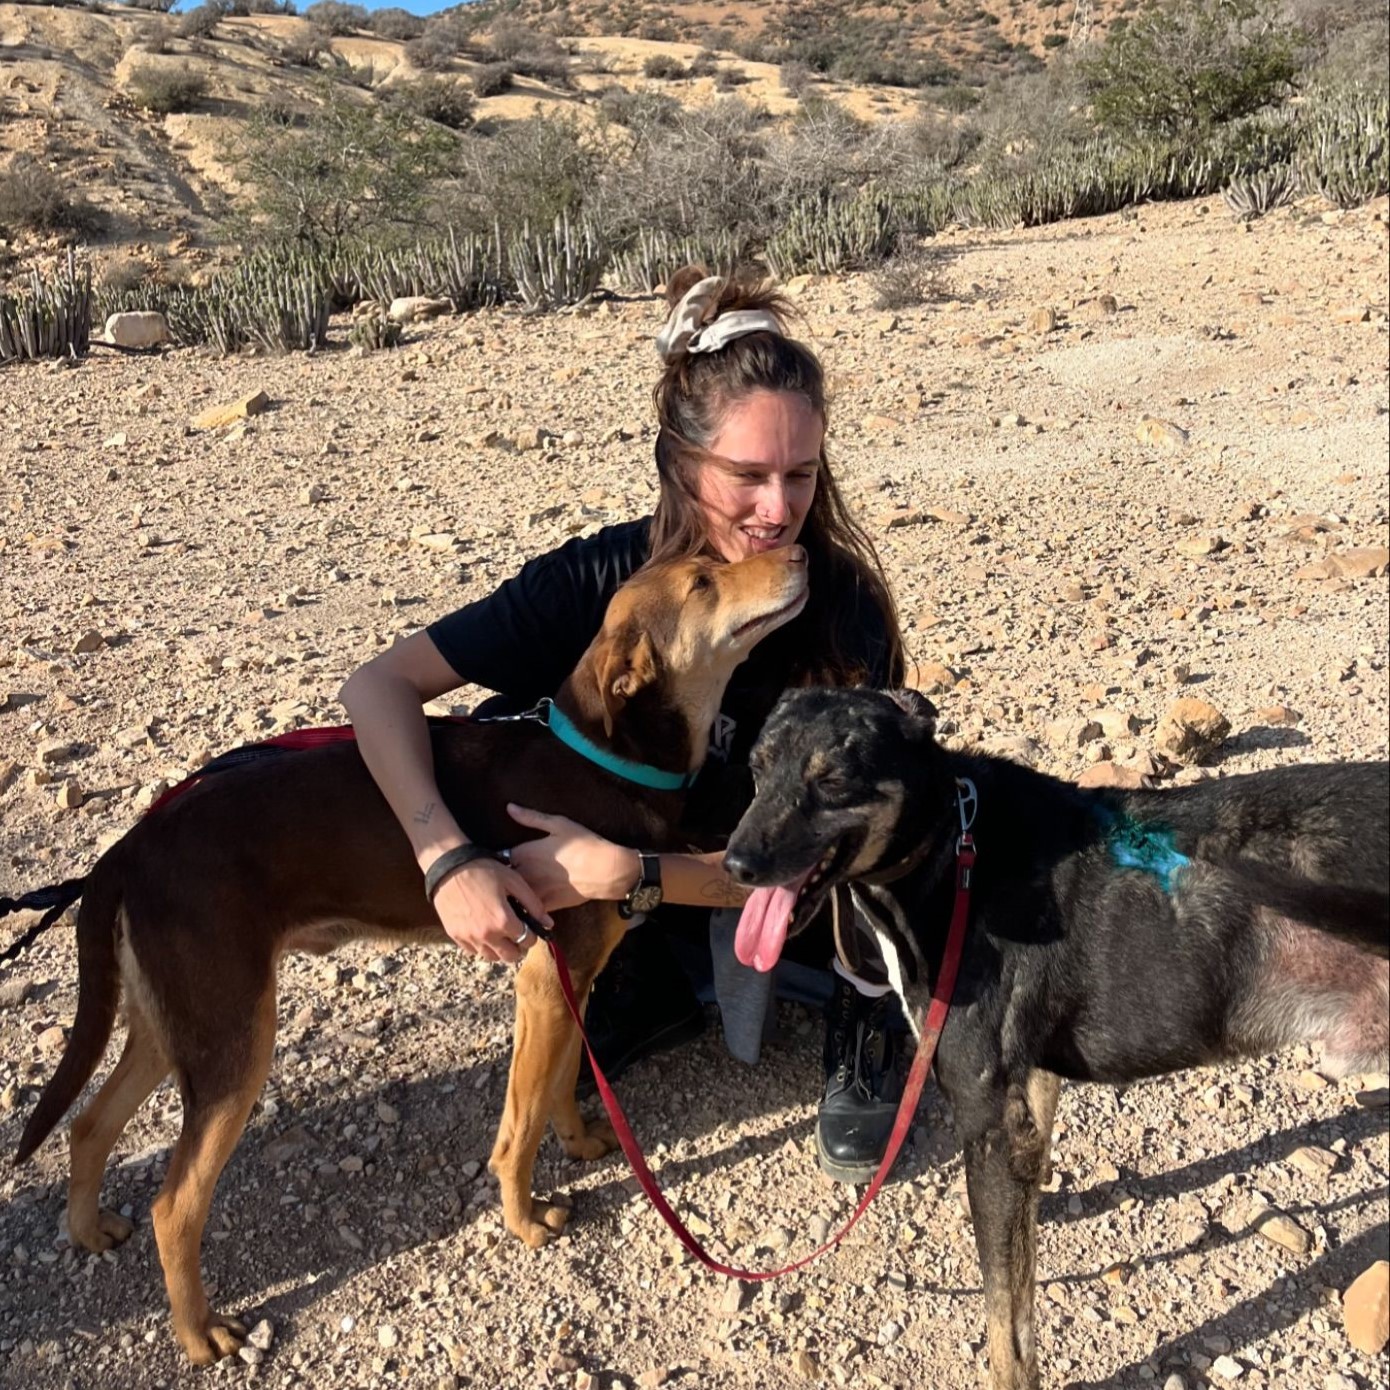 Lucy Austin, fondatrice de l’association Morocco Animal Aid, nous présente ses recommandations pour lutter efficacement contre la propagation des chiens errants.